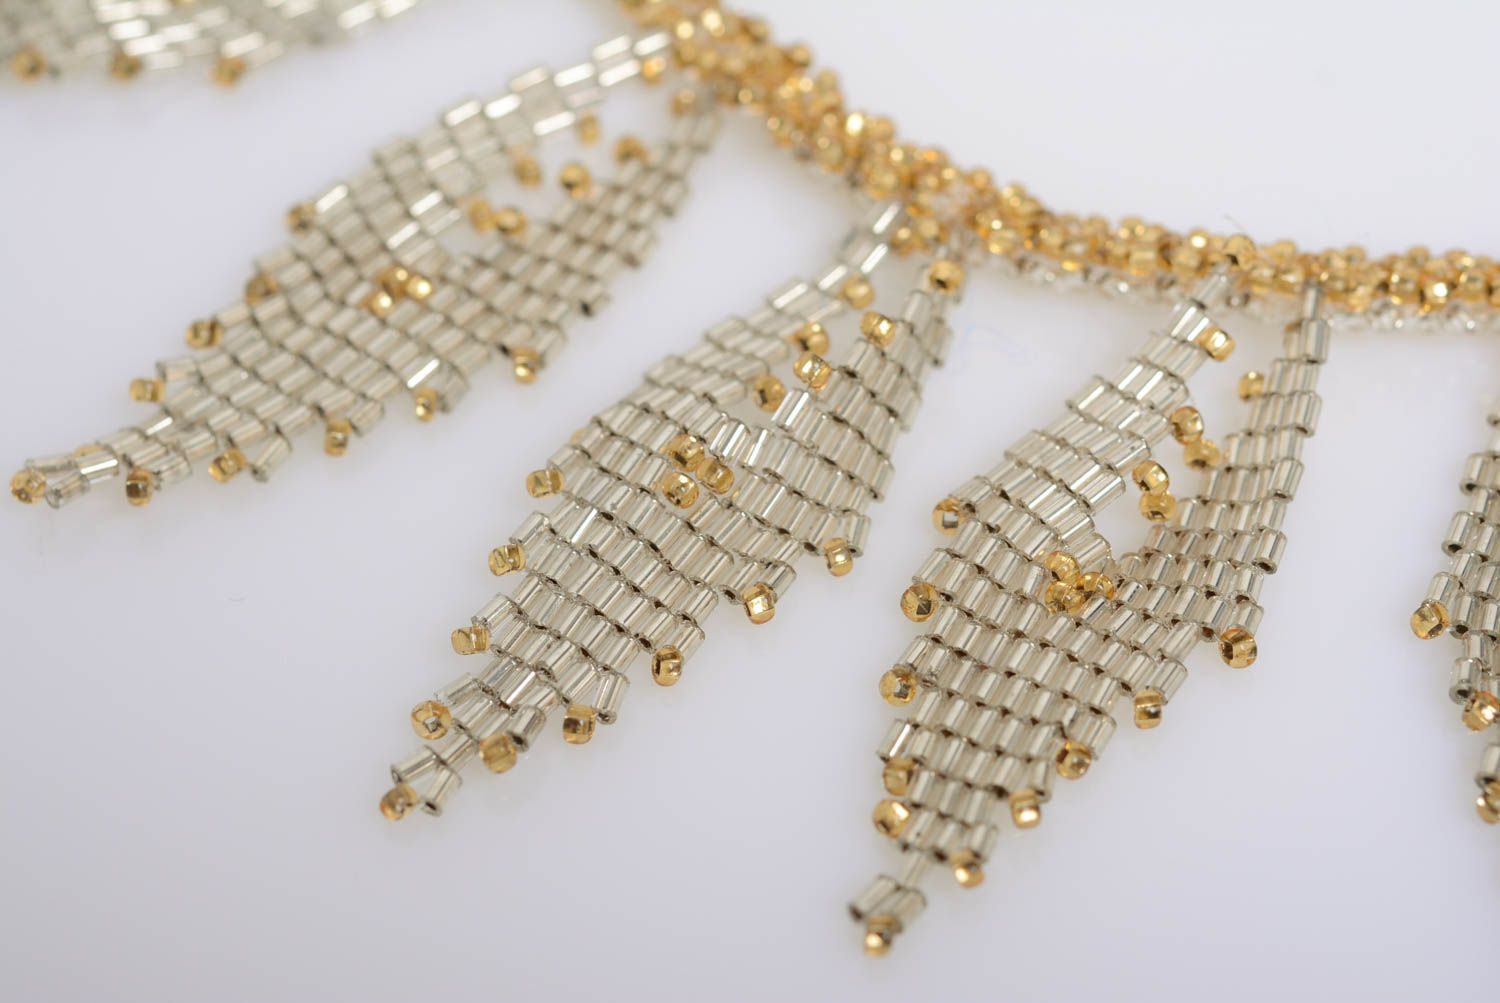 Ожерелье из бисера золотистого цвета нежное красивое ручной работы плетеное фото 2